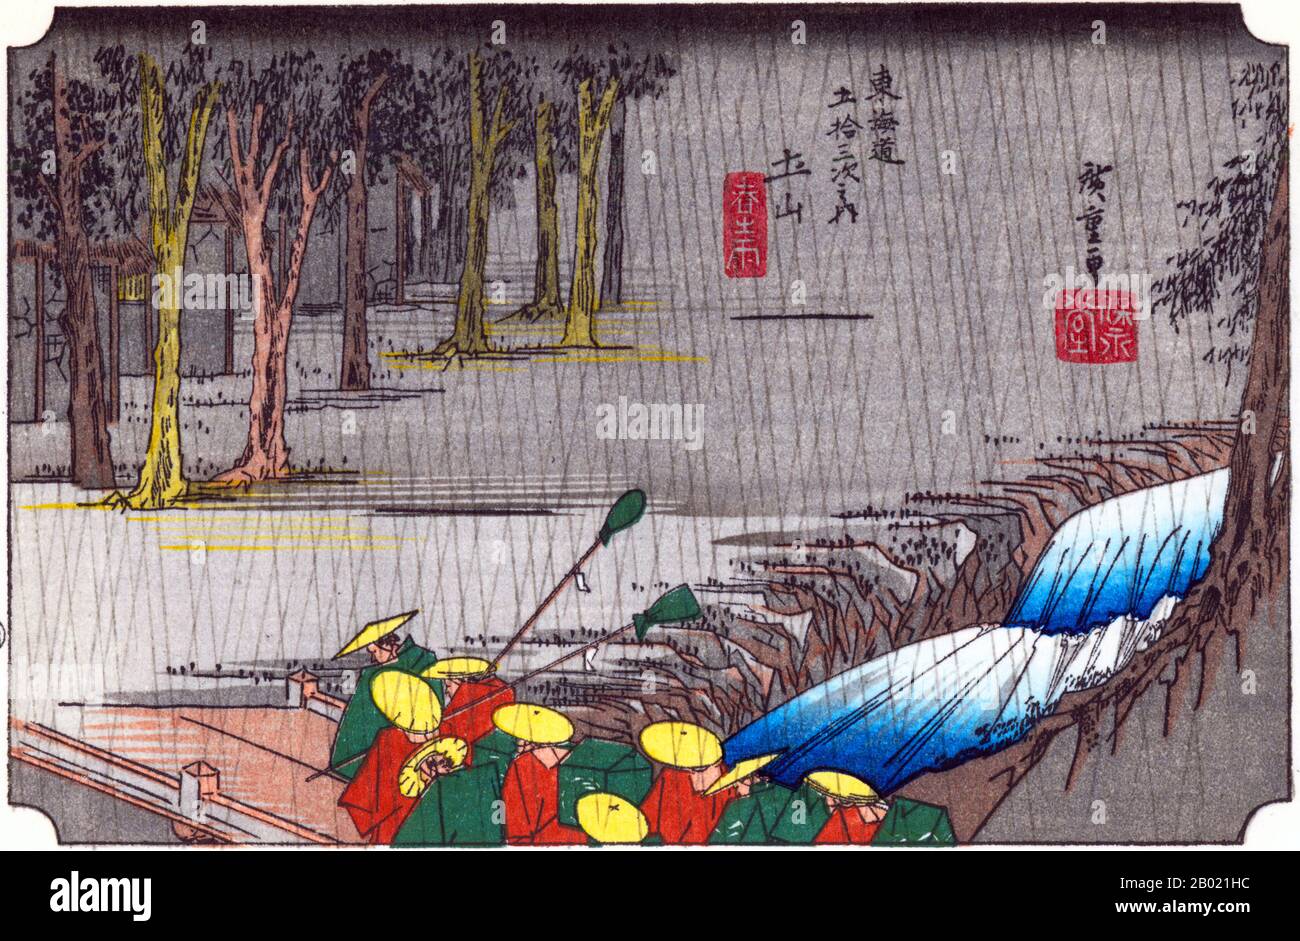 Tsuchi-yama: La testa di una processione di daimyo che attraversa un torrente da un ponte verso il villaggio, nascosto in un boschetto di alberi, sotto un forte acquazzone di pioggia. Questa stazione, situata nella foresta di montagna, era nota per la sua abbondante pioggia primaverile. Contro le forti piogge, indossando impermeabili, le avanguardie di una processione di un signore feudale attraversano un piccolo ponte che attraversa un torrente torrenziale. Utagawa Hiroshige (歌川 広重, 1797 – 12 ottobre 1858) è stato un . Fu anche chiamato Andō Hiroshige (安藤 広重) (un combin irregolare Foto Stock